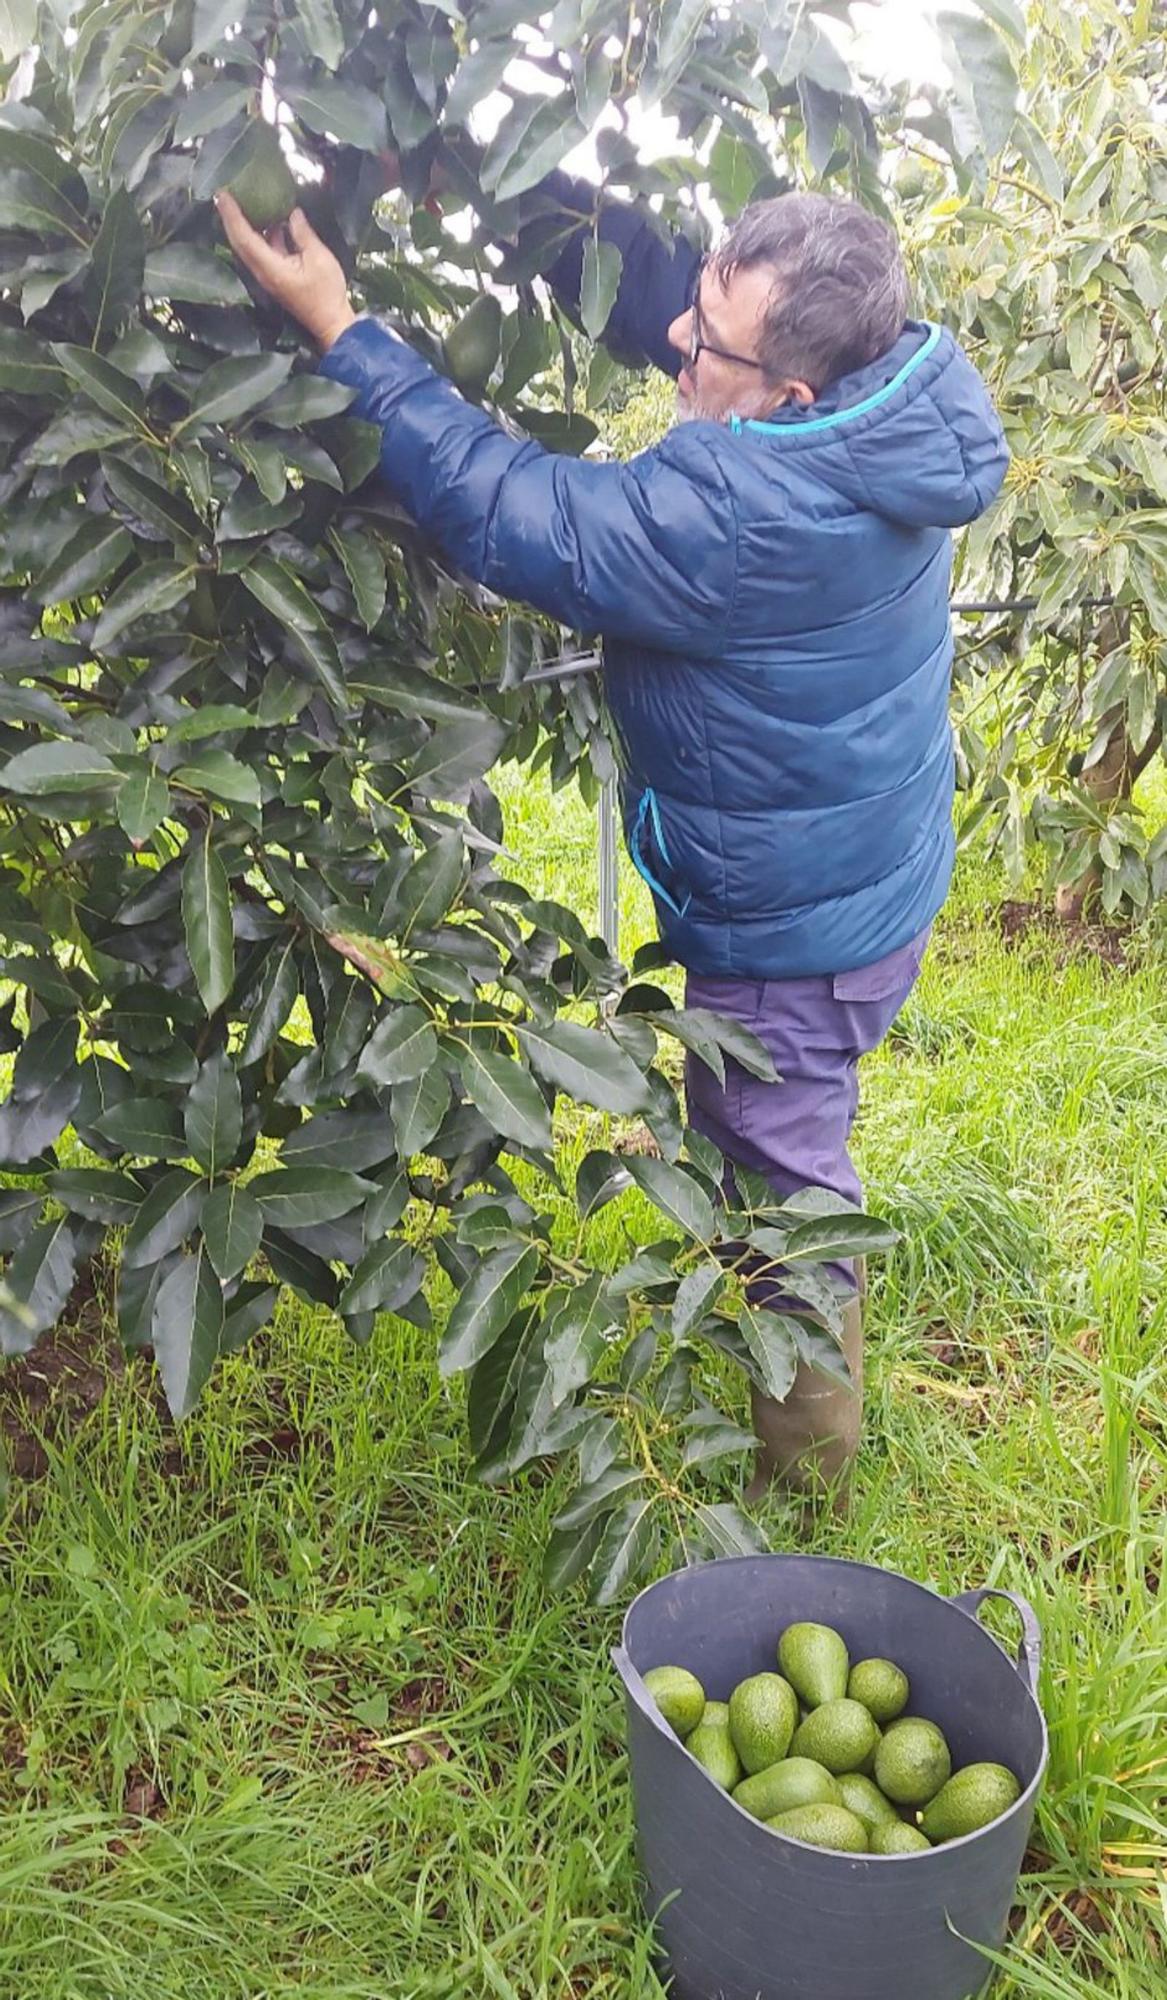 Los pioneros en el cultivo de aguacate para comercializar en O Rosal y Tomiño, “Cultivos Miñotos”, en un momento de la recolecta esta semana.  